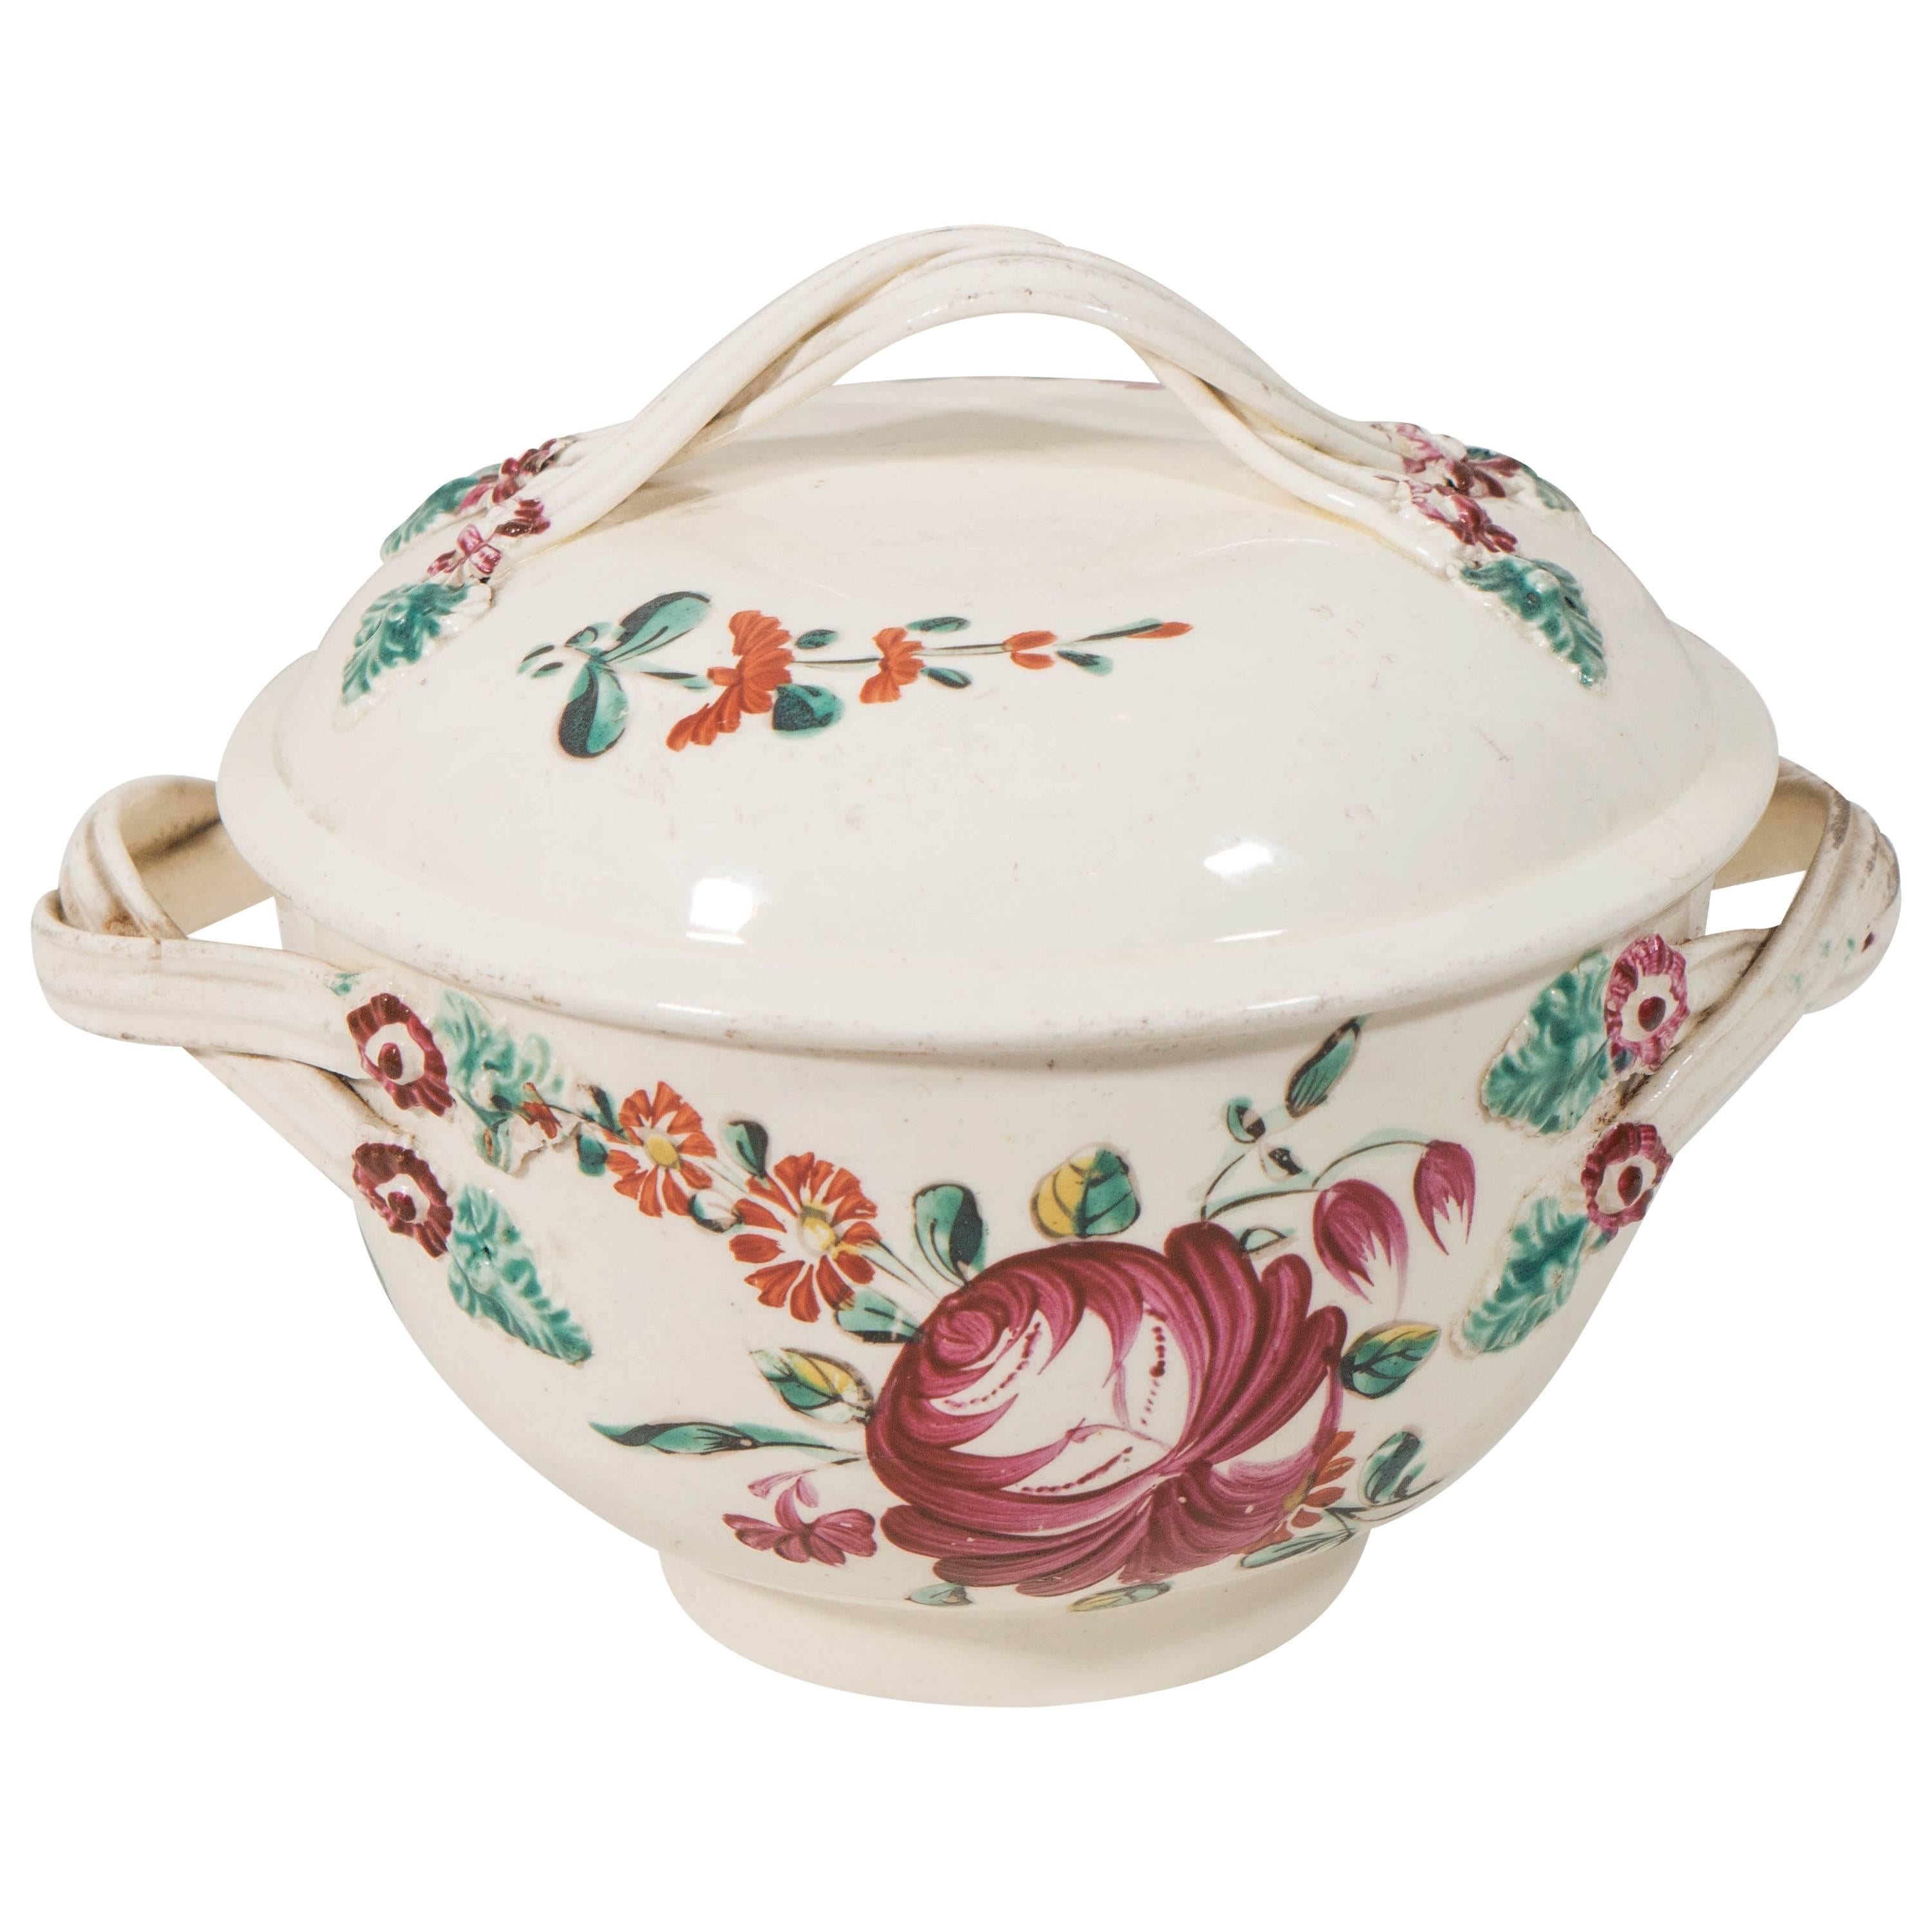 Antique Creamware "King's Rose" Pattern Sugar Bowl Made circa 1780-1790